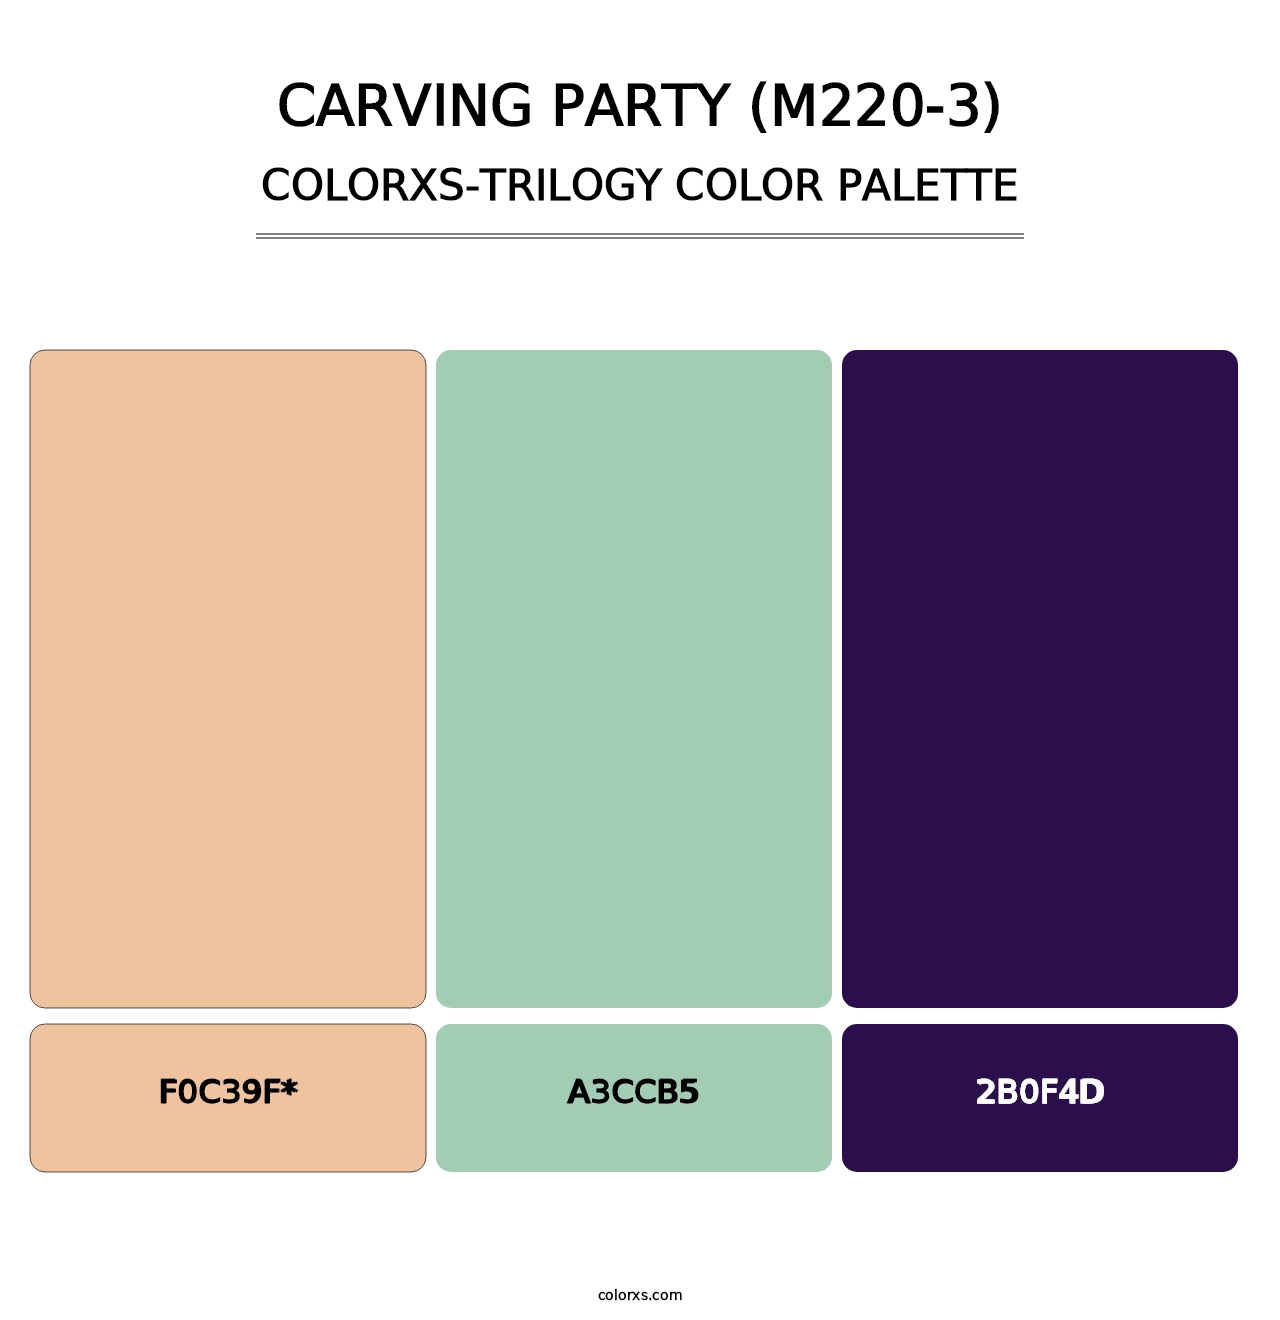 Carving Party (M220-3) - Colorxs Trilogy Palette